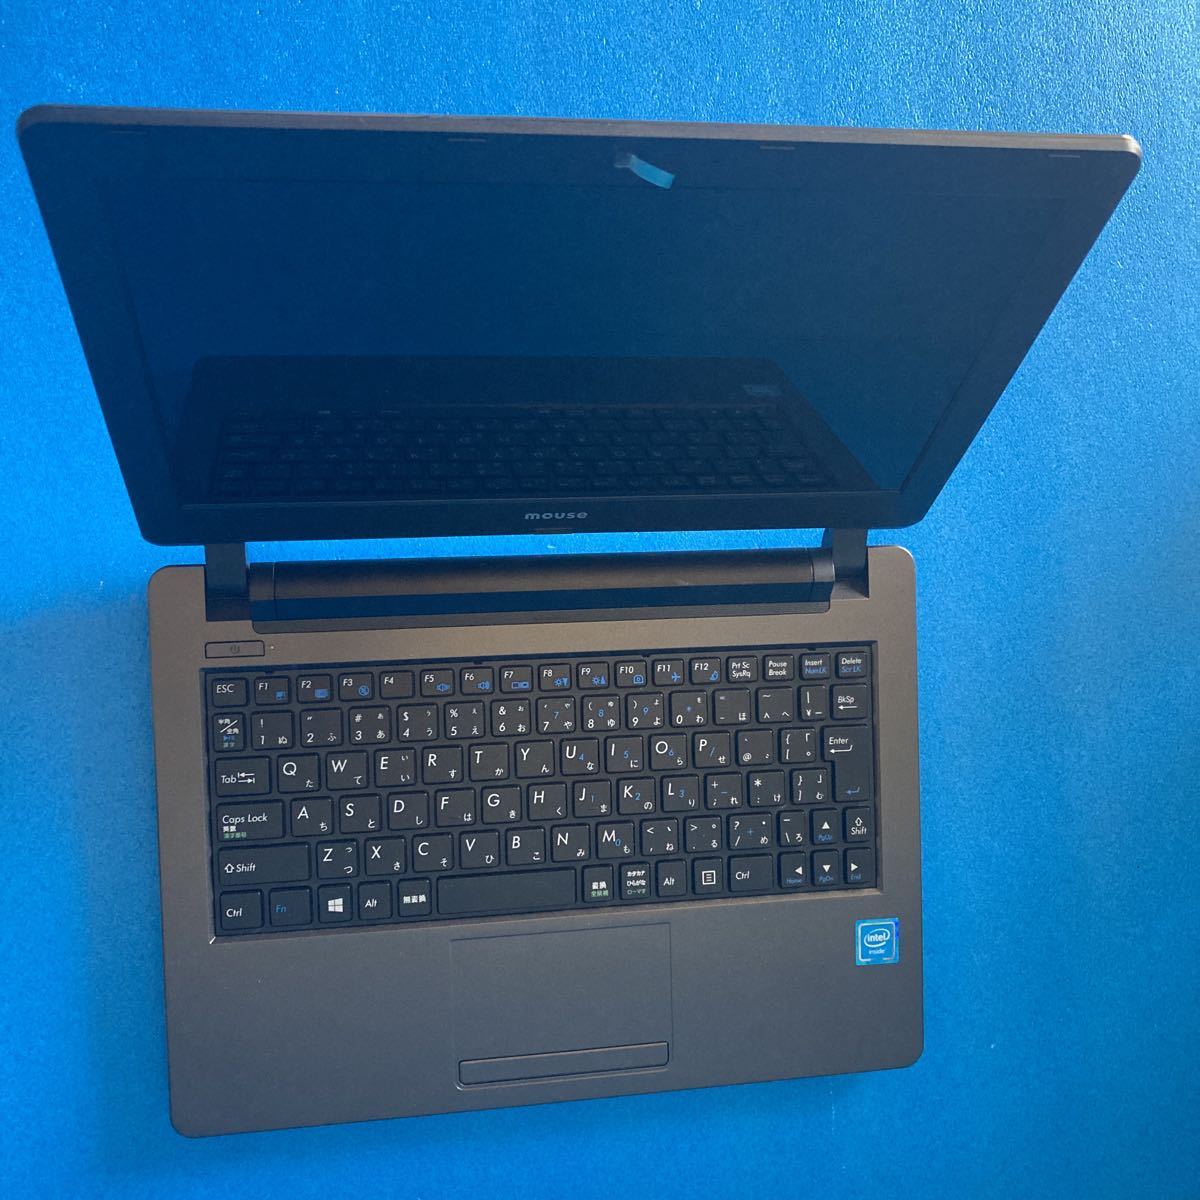 mouse:LB-C240E2 laptop (129)